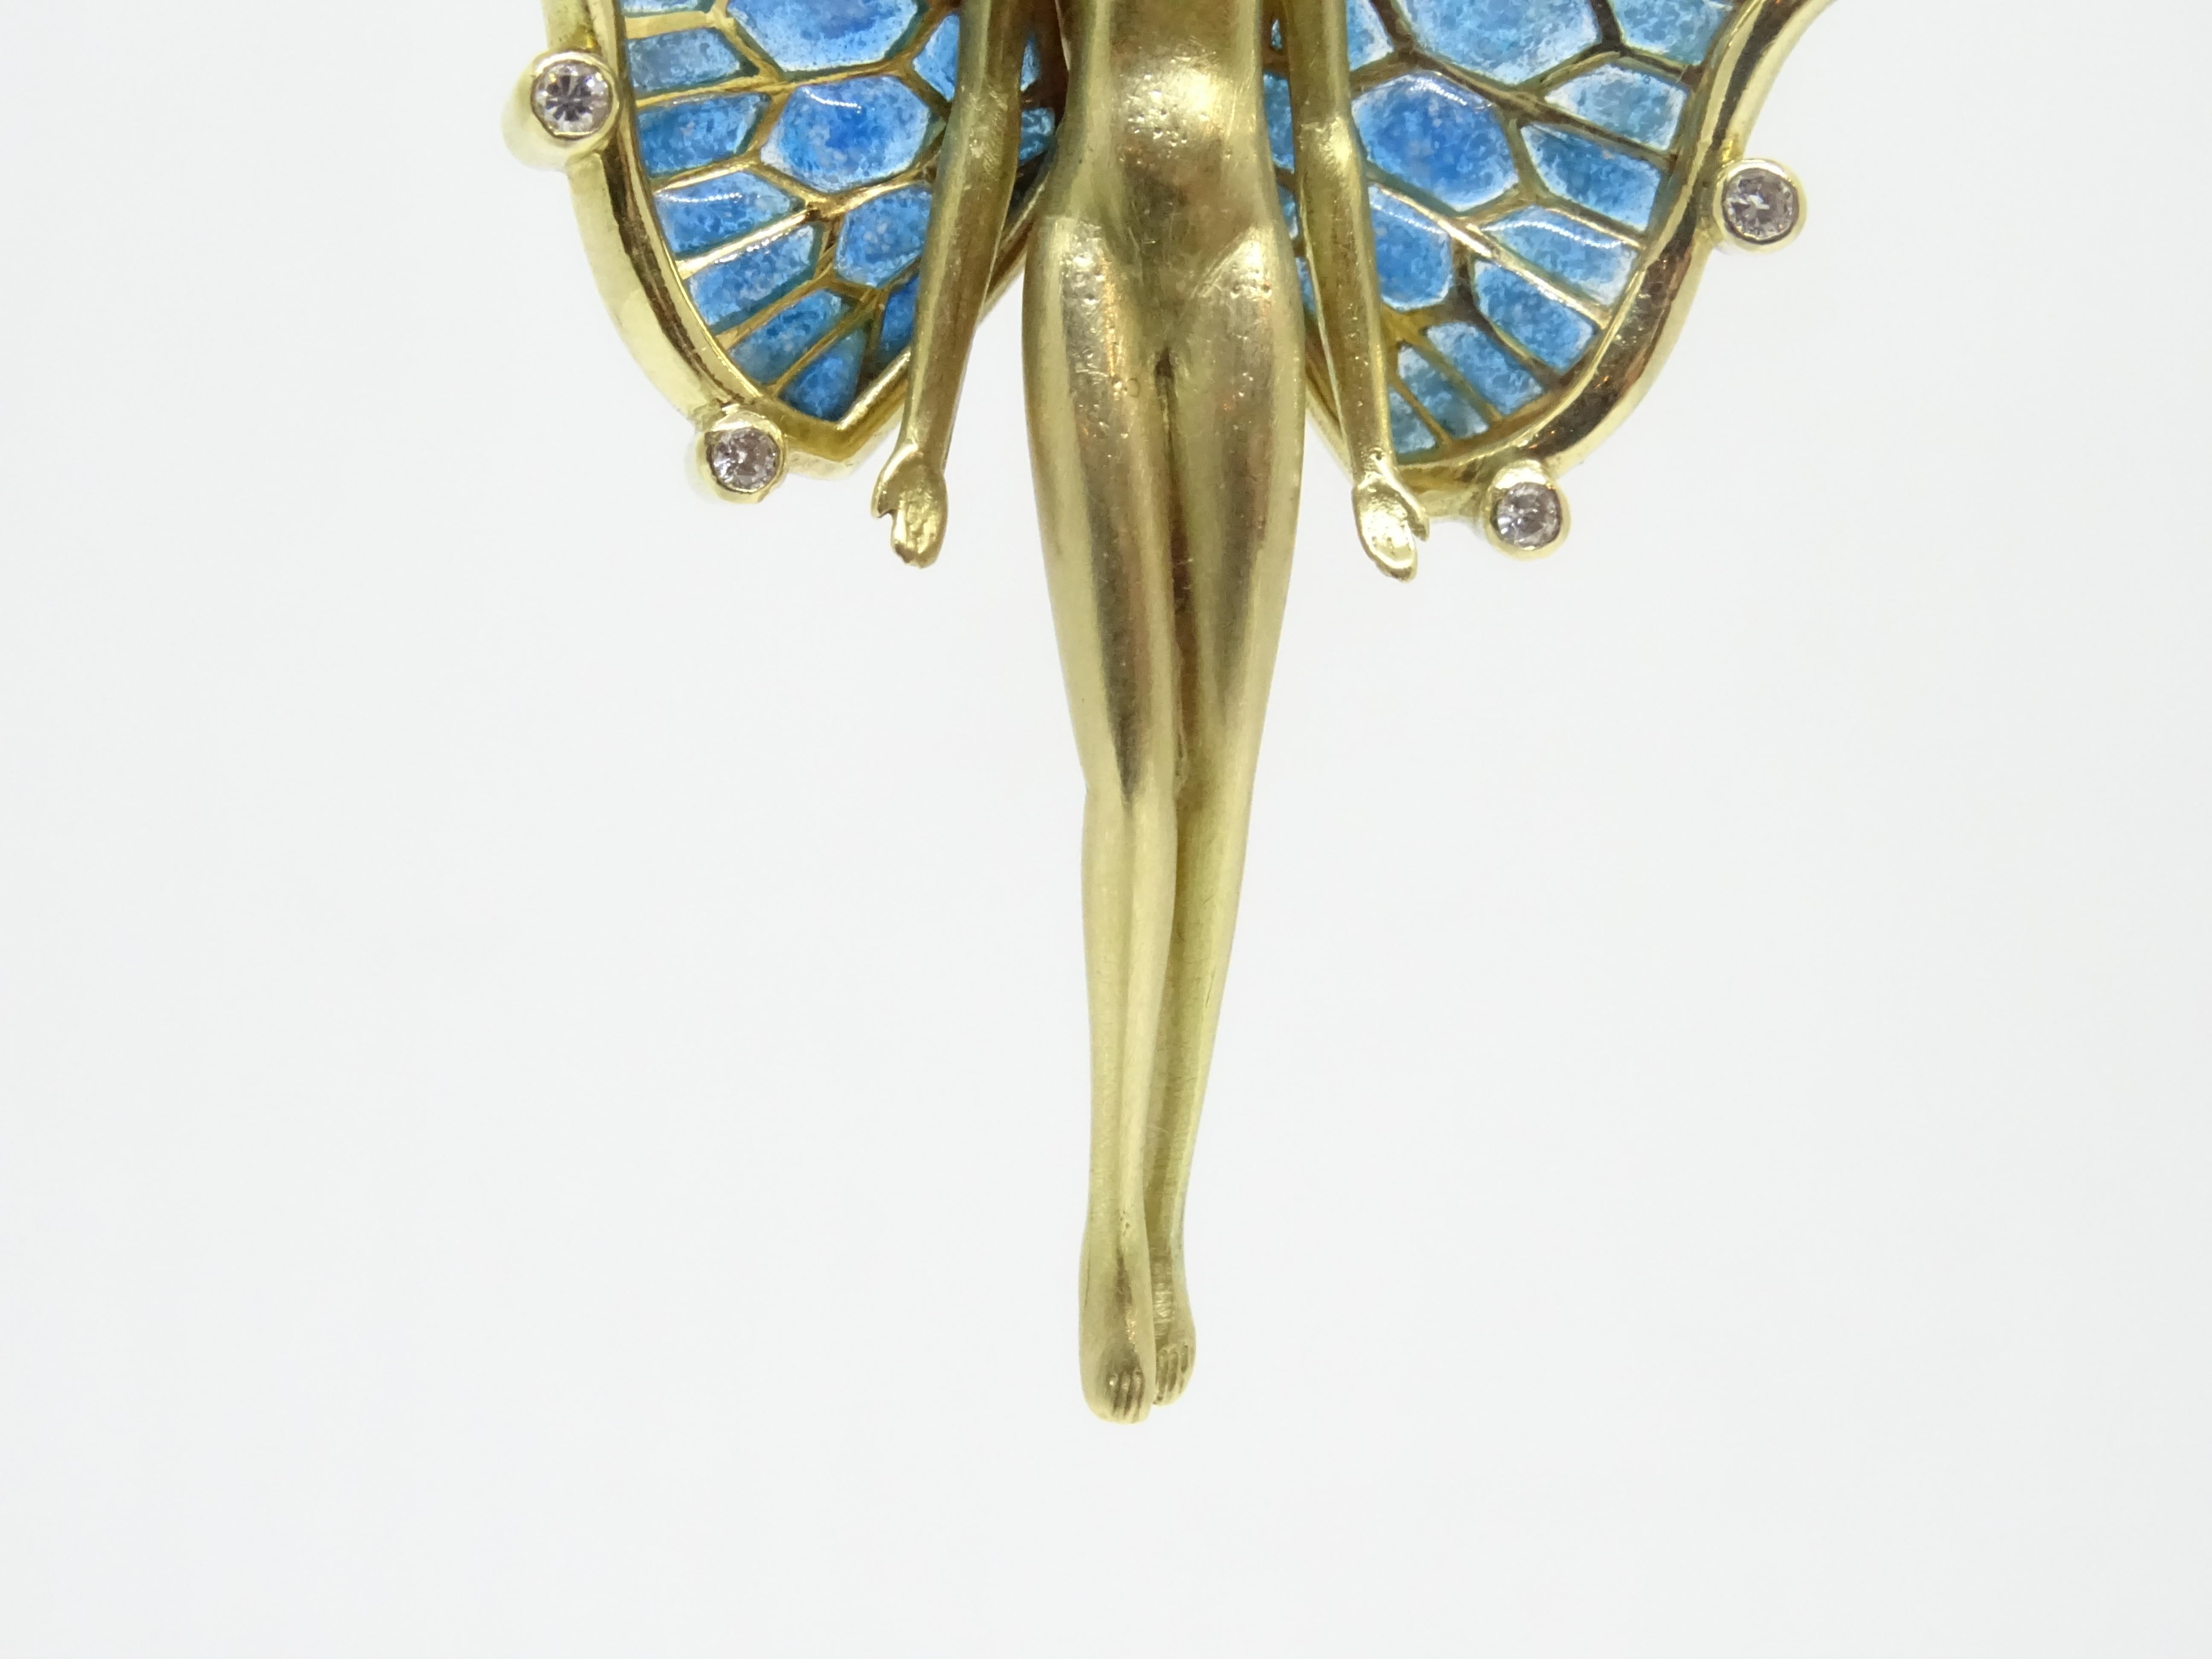 Brilliant Cut Fairy  Nymph pendant  brooch, 18k gold, plique-à-jour enamel 0.20 cts. diamonds